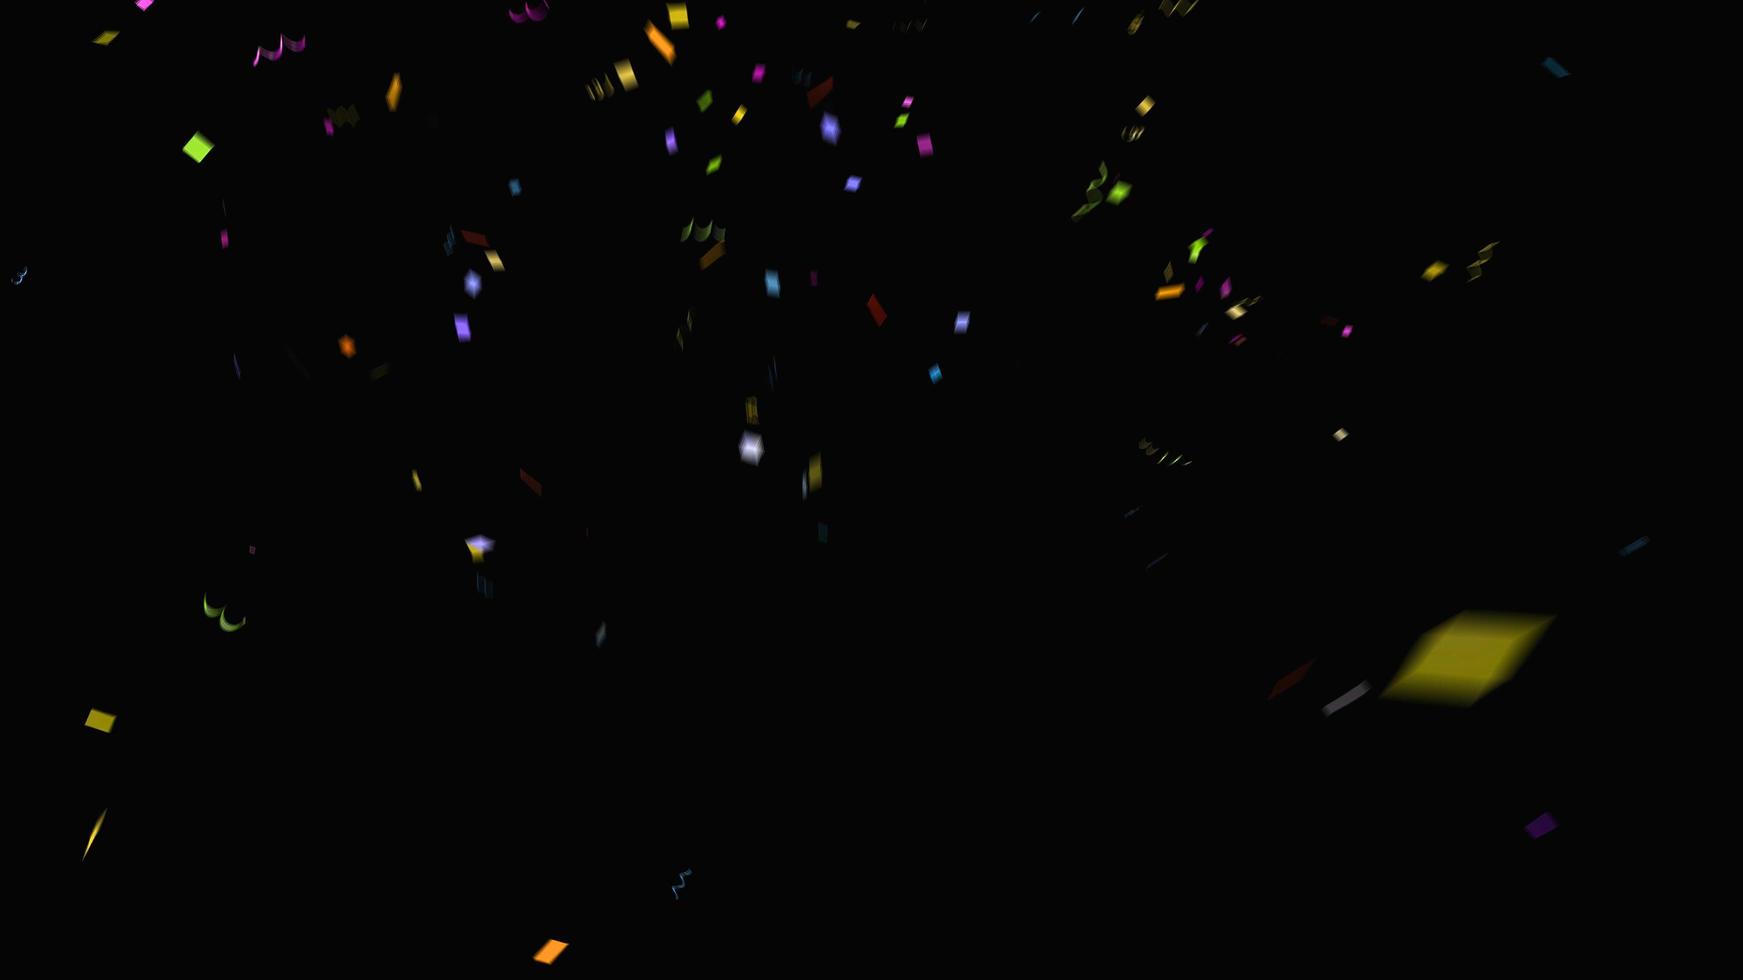 färgglada regnbåge konfetti gnistra abstrakt textur överlägger glitter gyllene partiklar på svart. foto